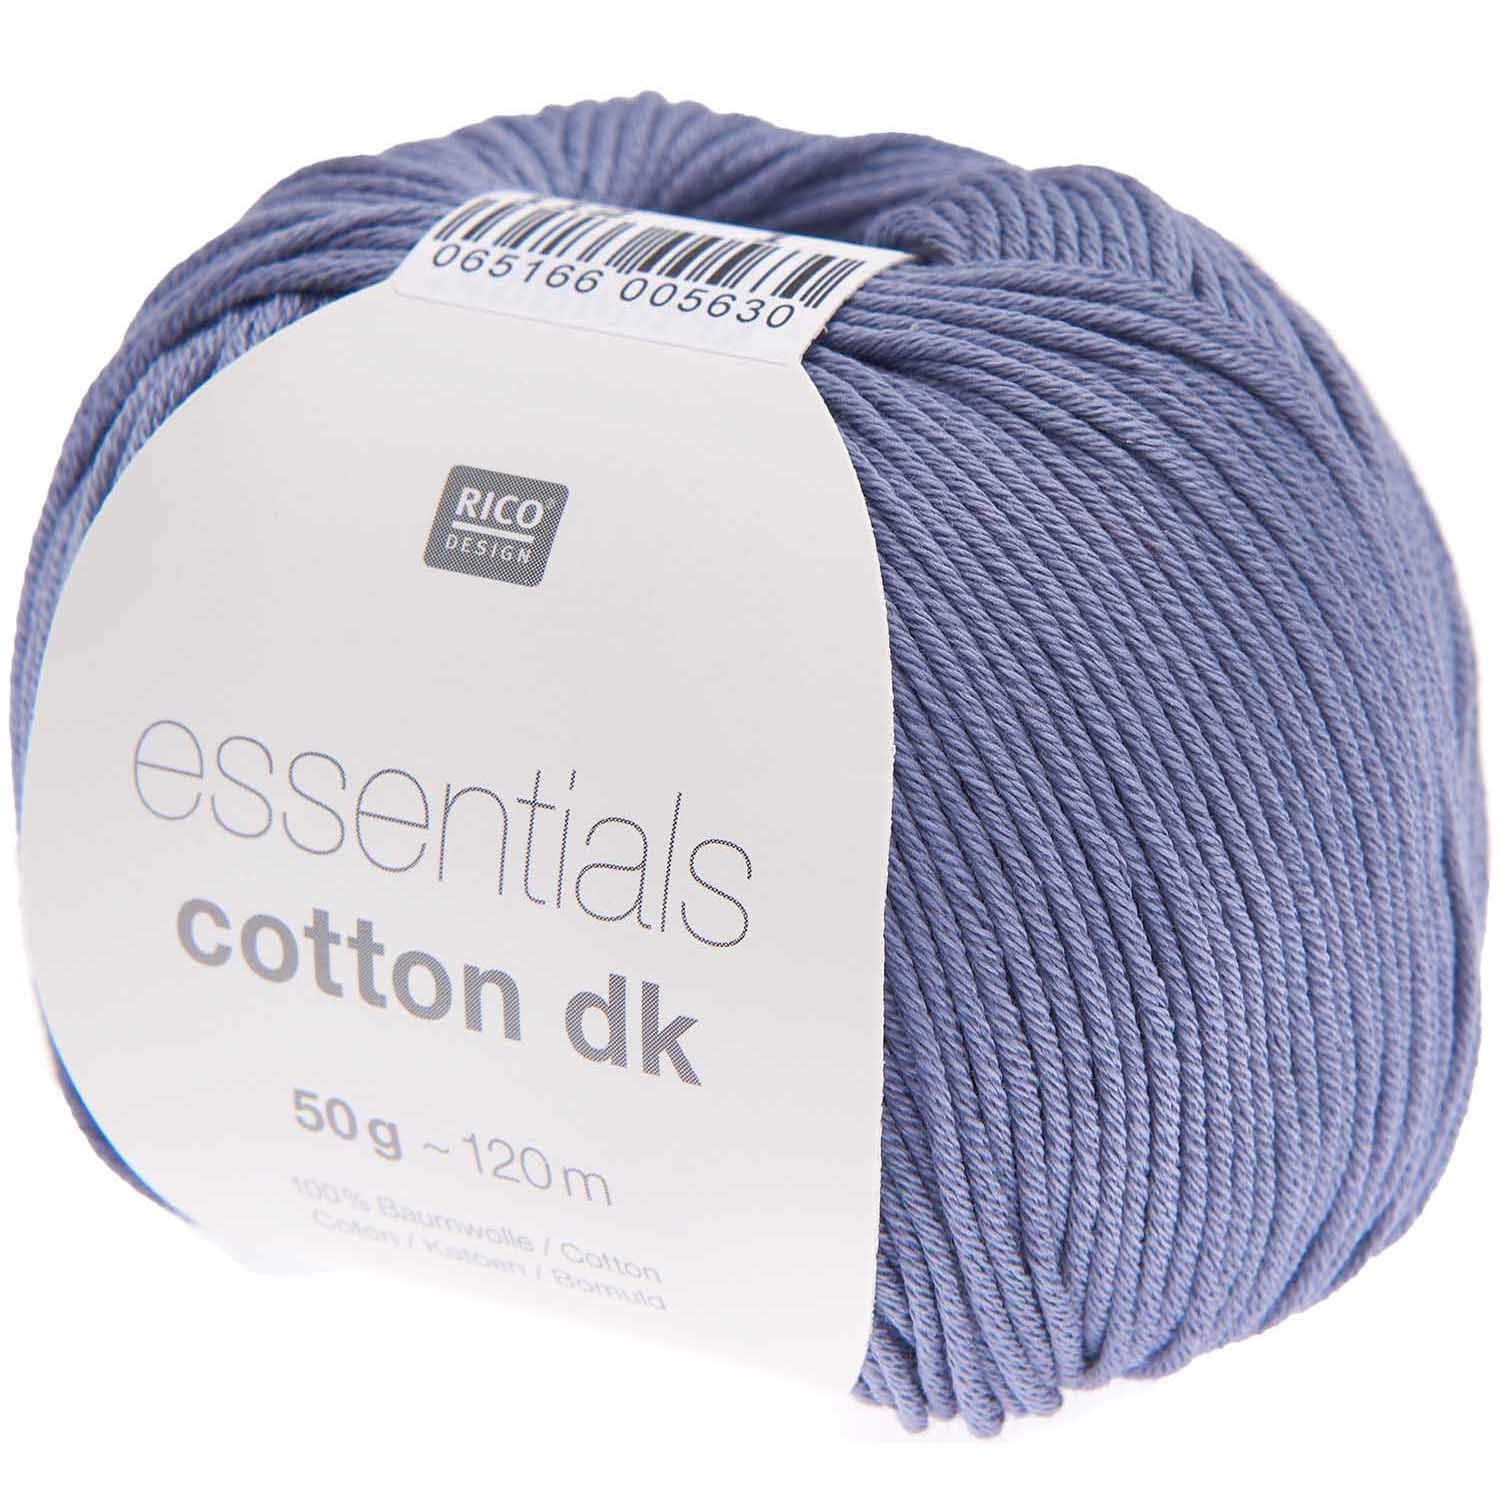 Rico Essentials Cotton DK, ozeanblau